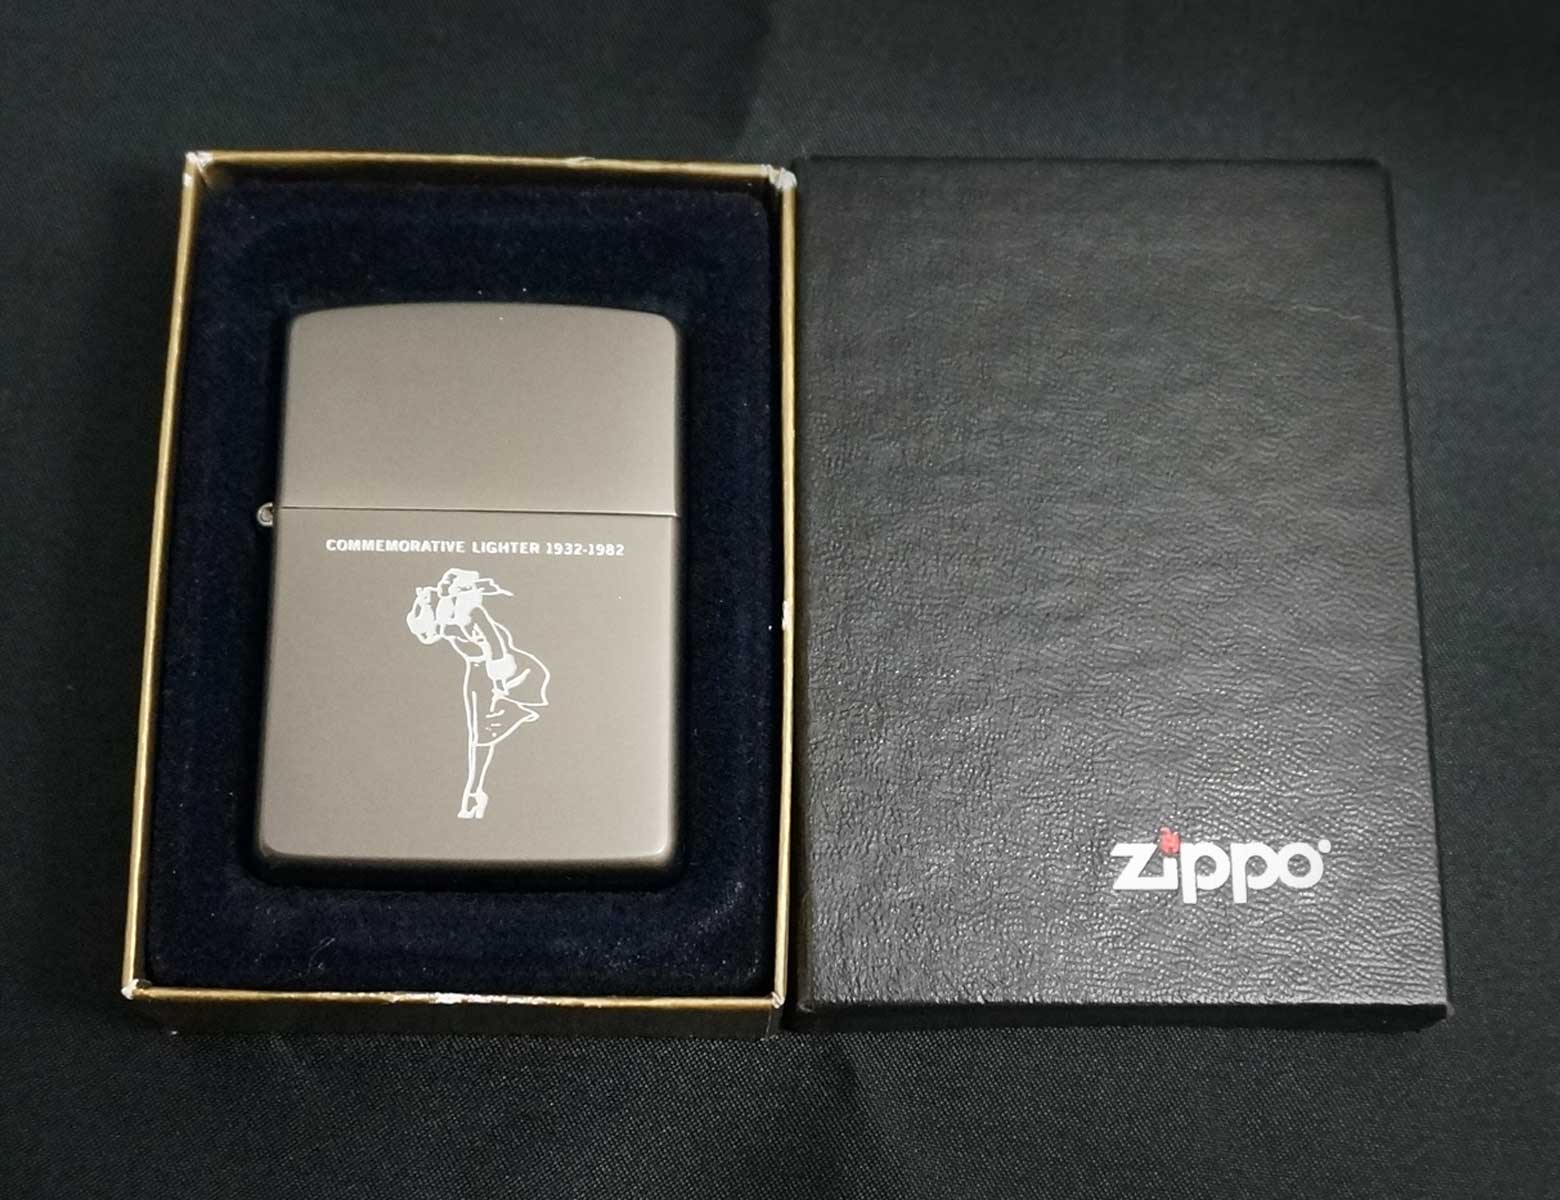 画像: zippo WINDY コメモラティブ柄 グレー 1997年製造